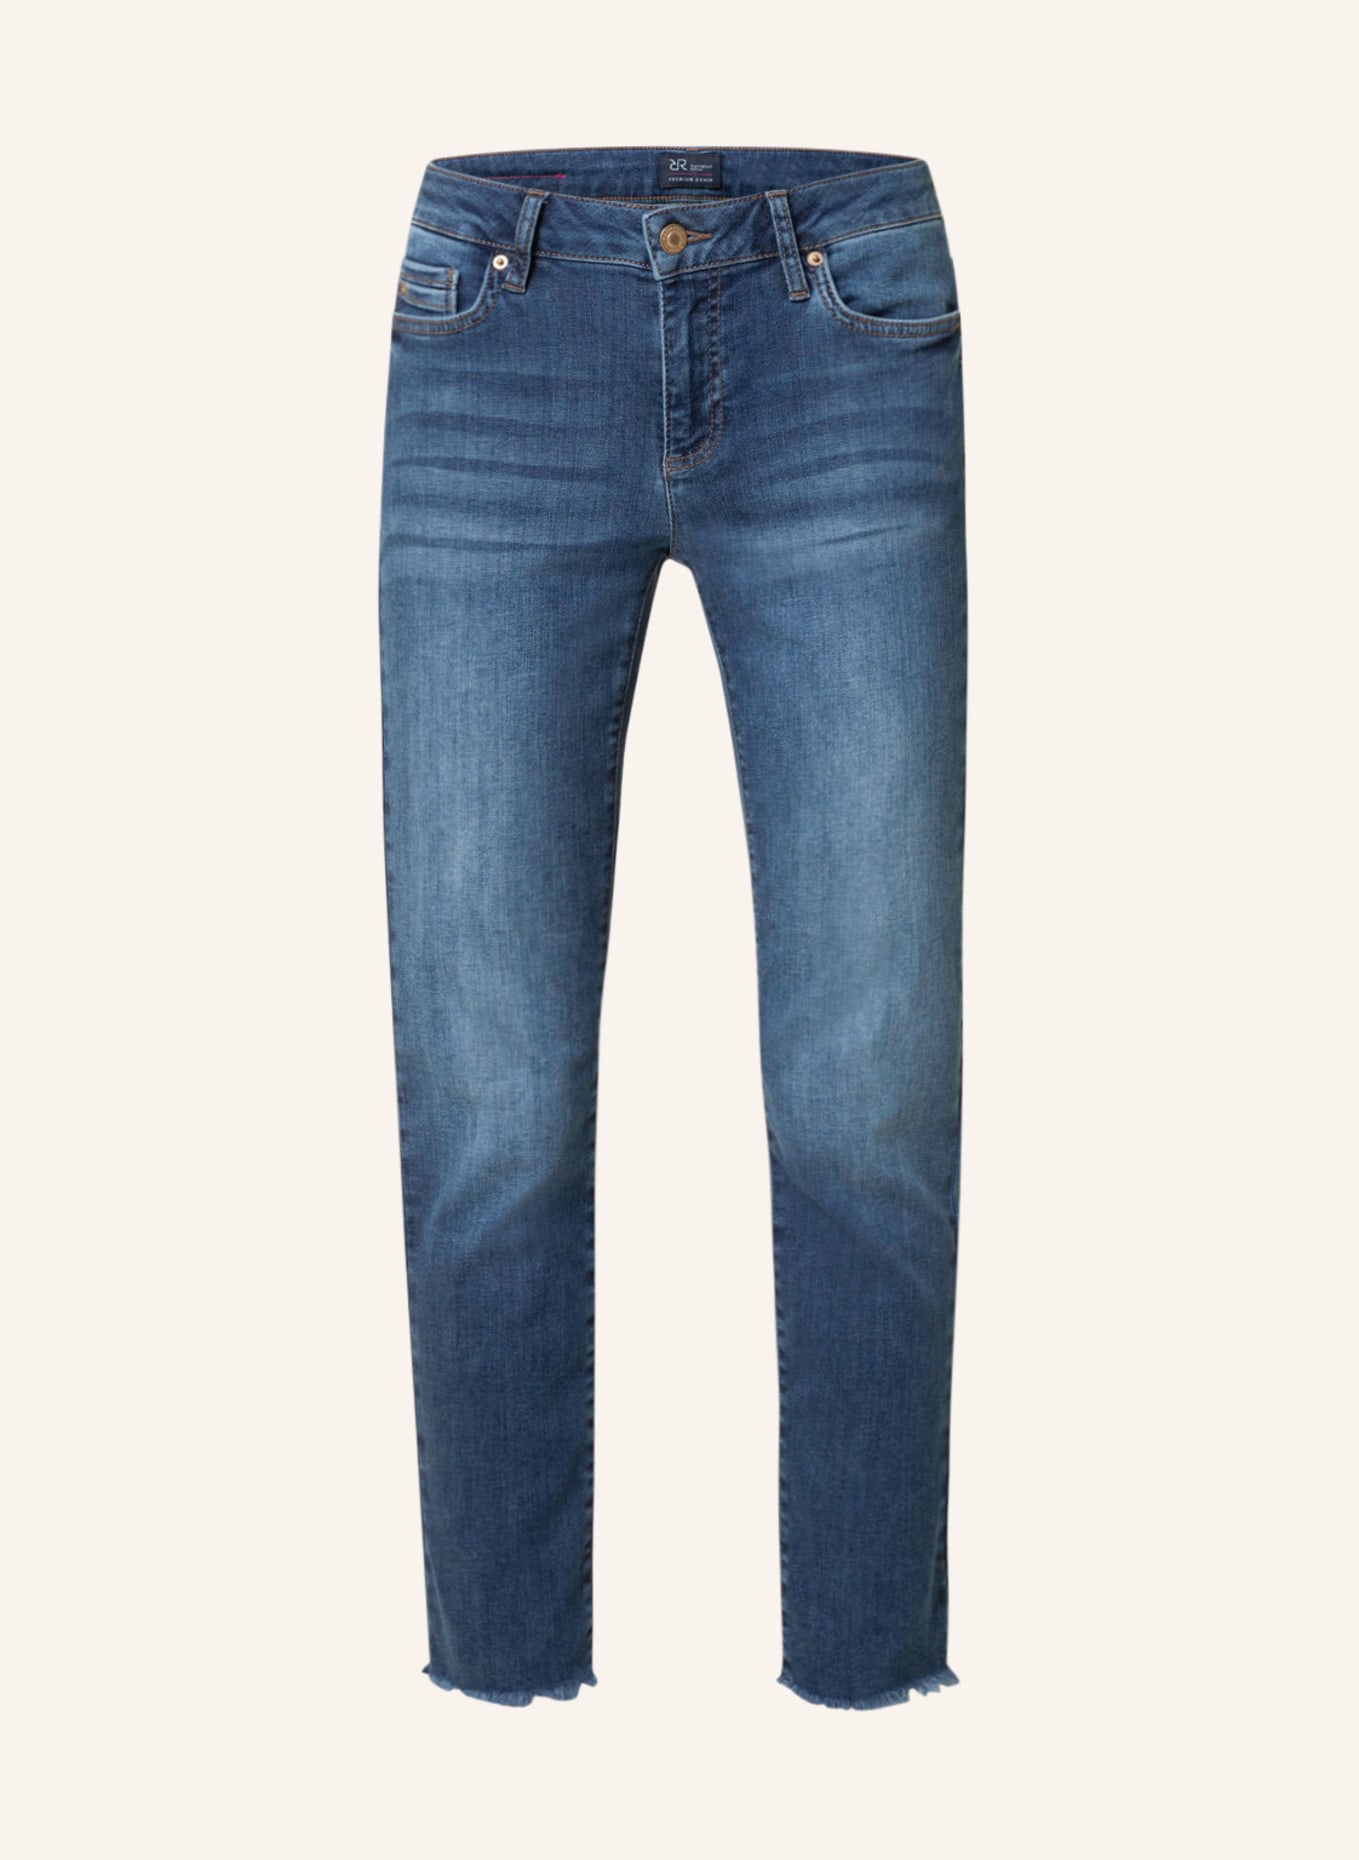 RAFFAELLO ROSSI Jeans JANE, Farbe: 847 jeansblue (Bild 1)